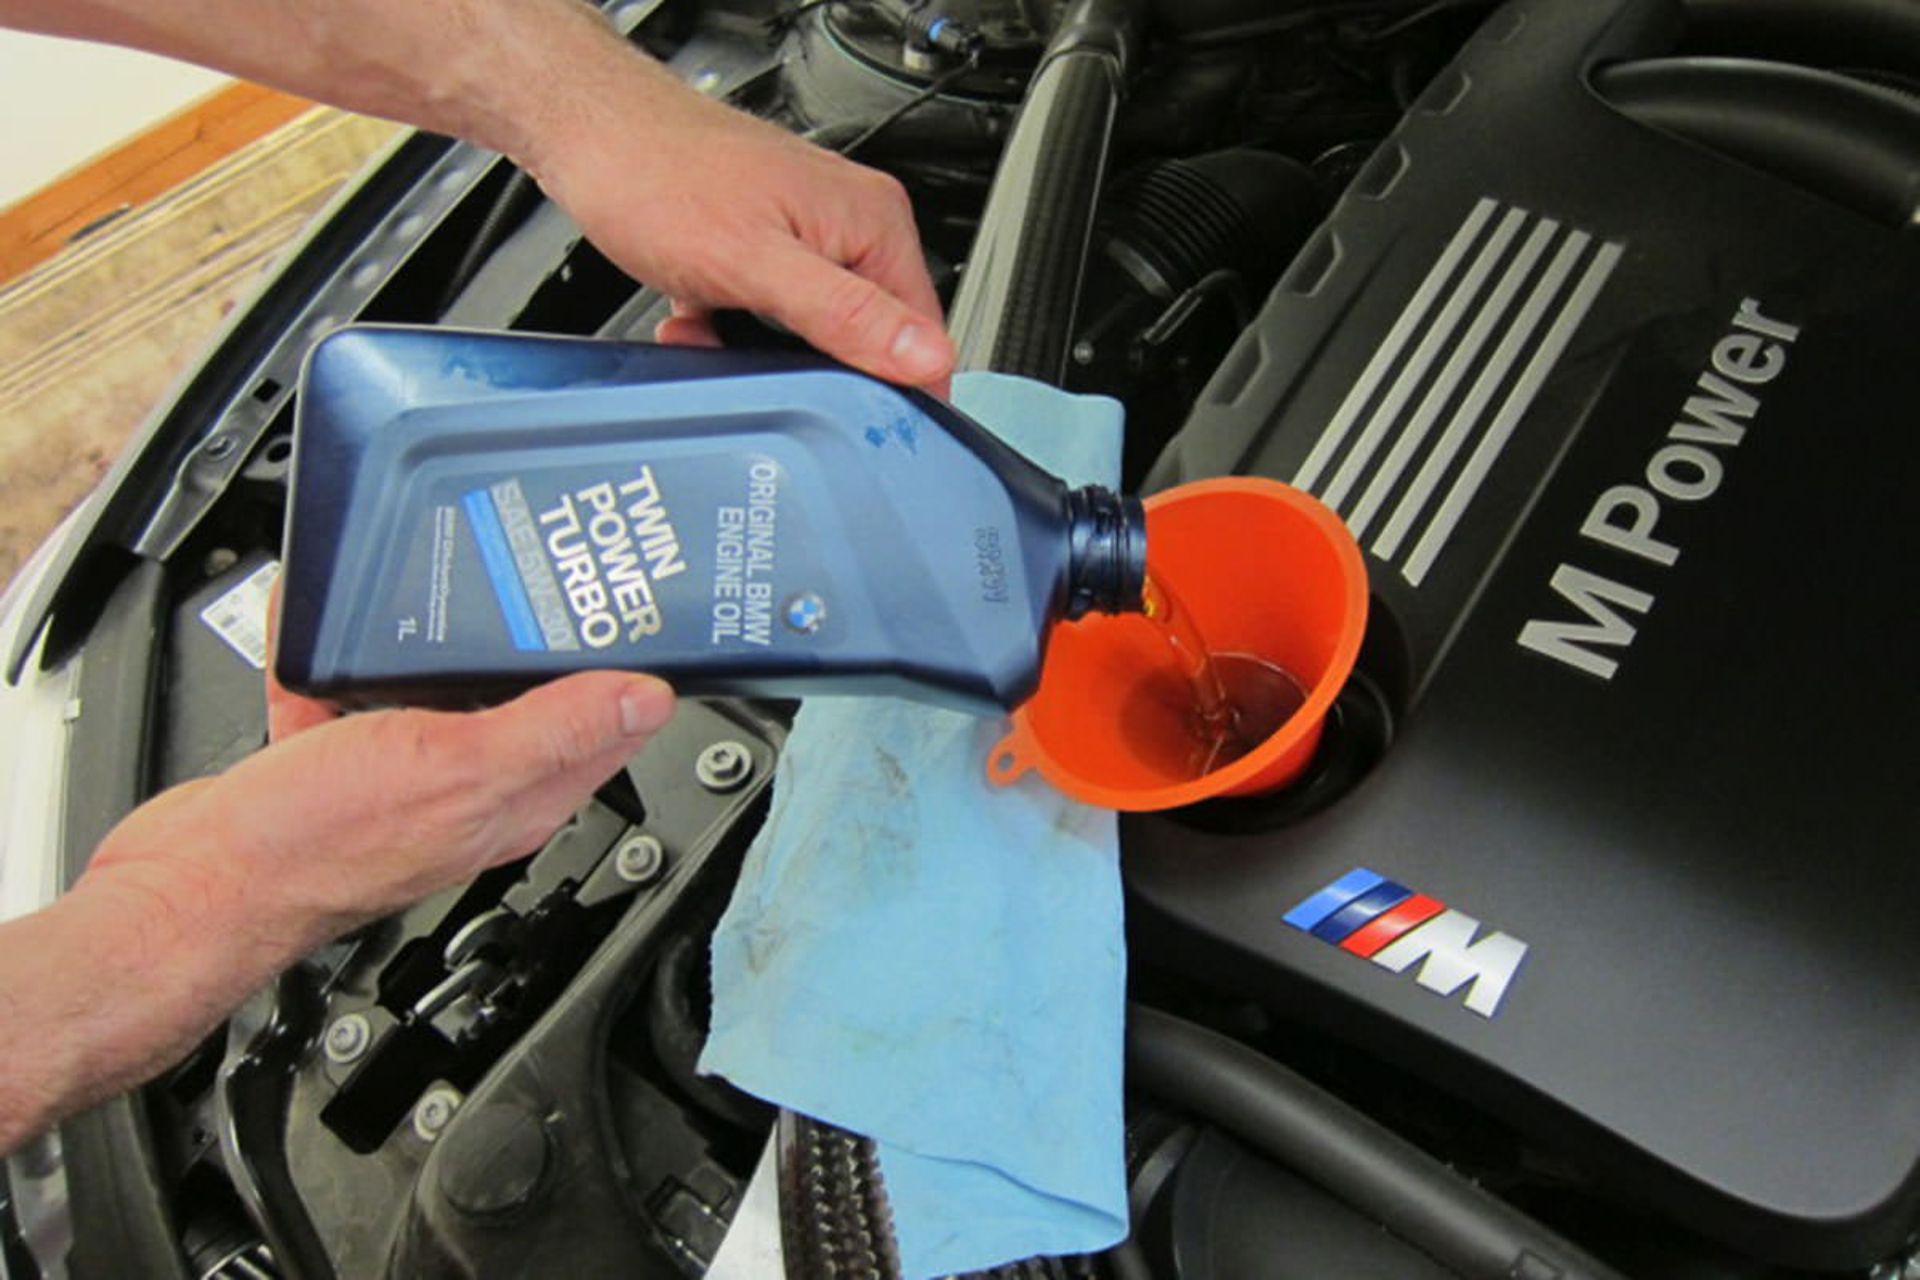 مرجع متخصصين ايران تعويض روغن پيشرانه خودرو بي ام و / BMW engine Oil Change در گاراژ خانگي توسط مالك